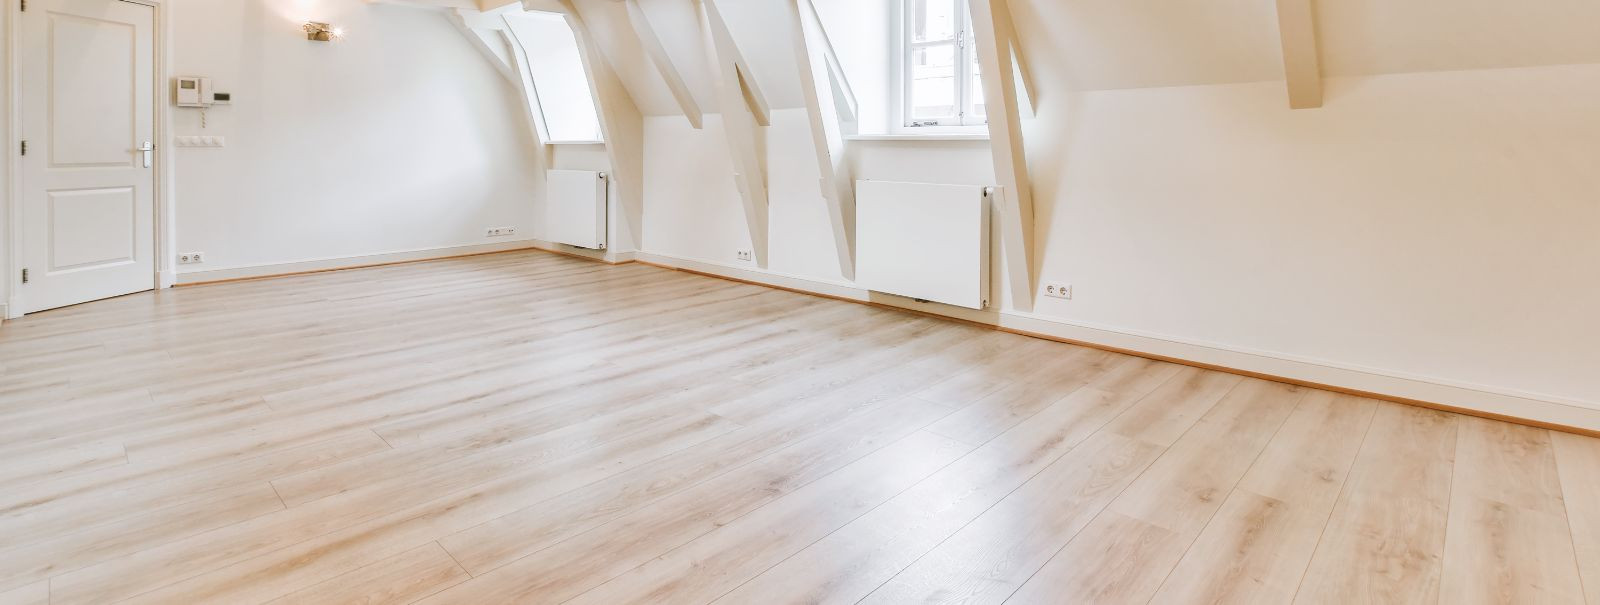 Eritellimusel põrandakate on spetsiaalselt sinu kodu mõõtmetele, stiilieelistustele ja funktsionaalsetele vajadustele kohandatud lahendus. Erinevalt masstoodang